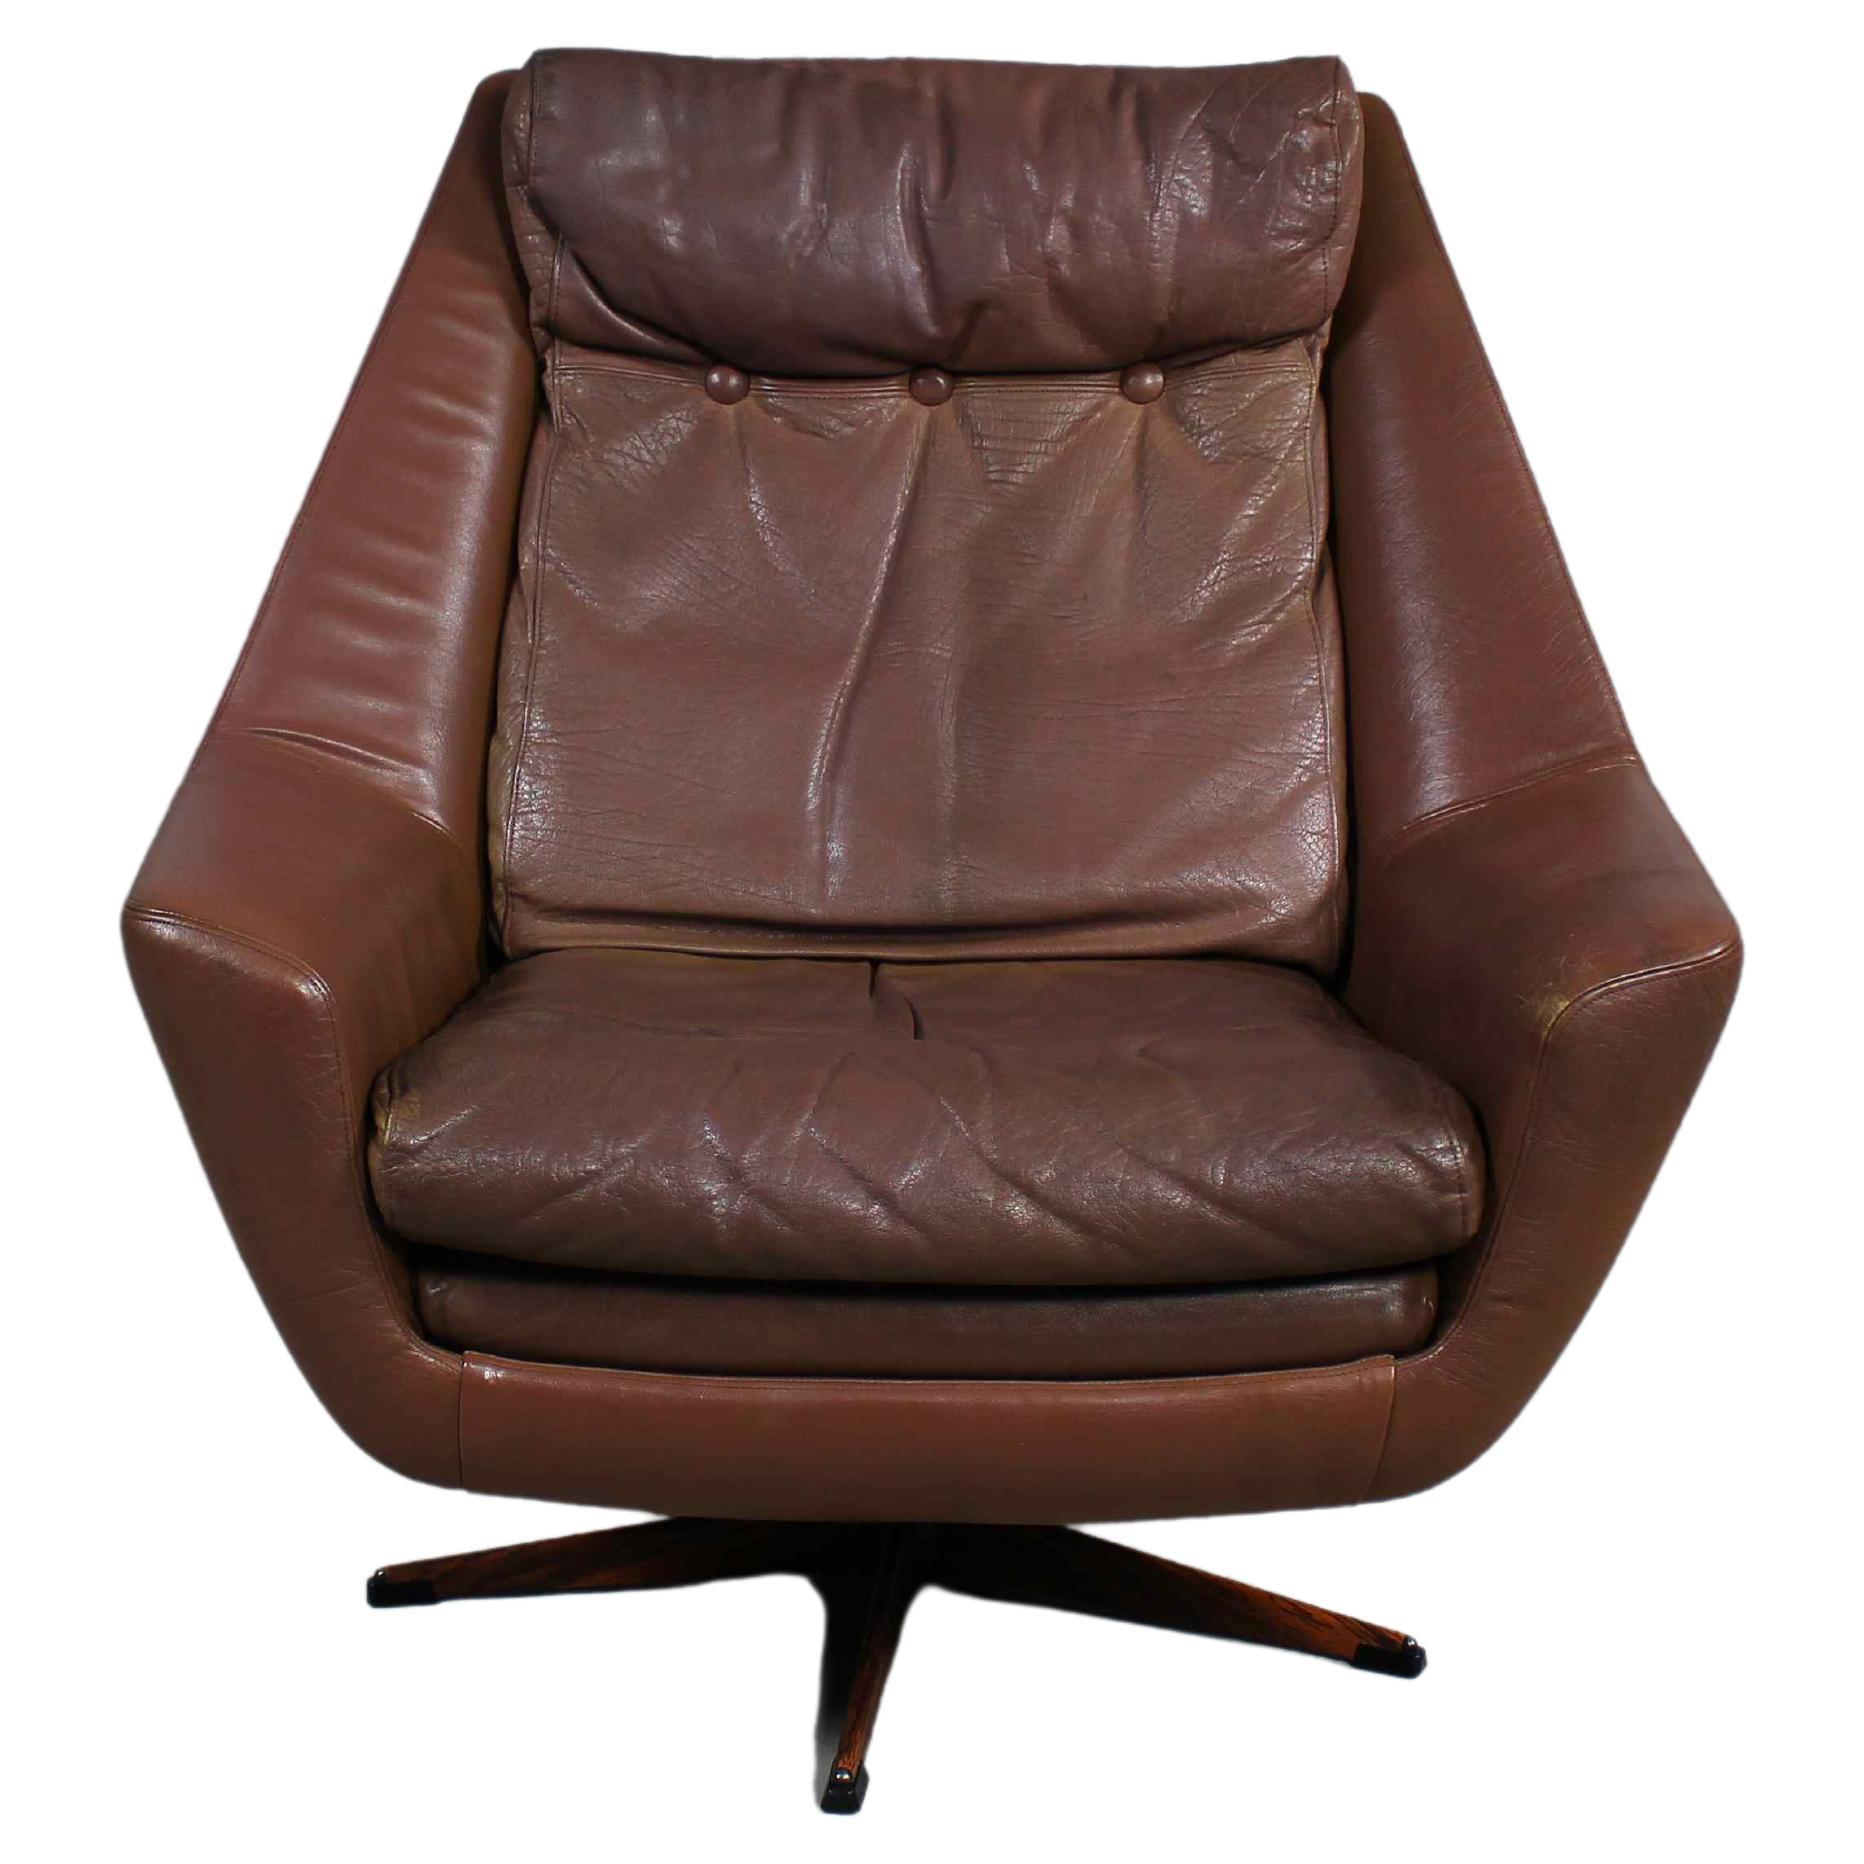 Fabriqué au Danemark dans les années 1960 par Erhardsen & Andersen,
Chaise de salon Retro Mid-Century Modern,
rembourré en cuir brun souple,
avec des coussins non fixés sur l'assise et le dossier,
sur une base pivotante à cinq étoiles.
 